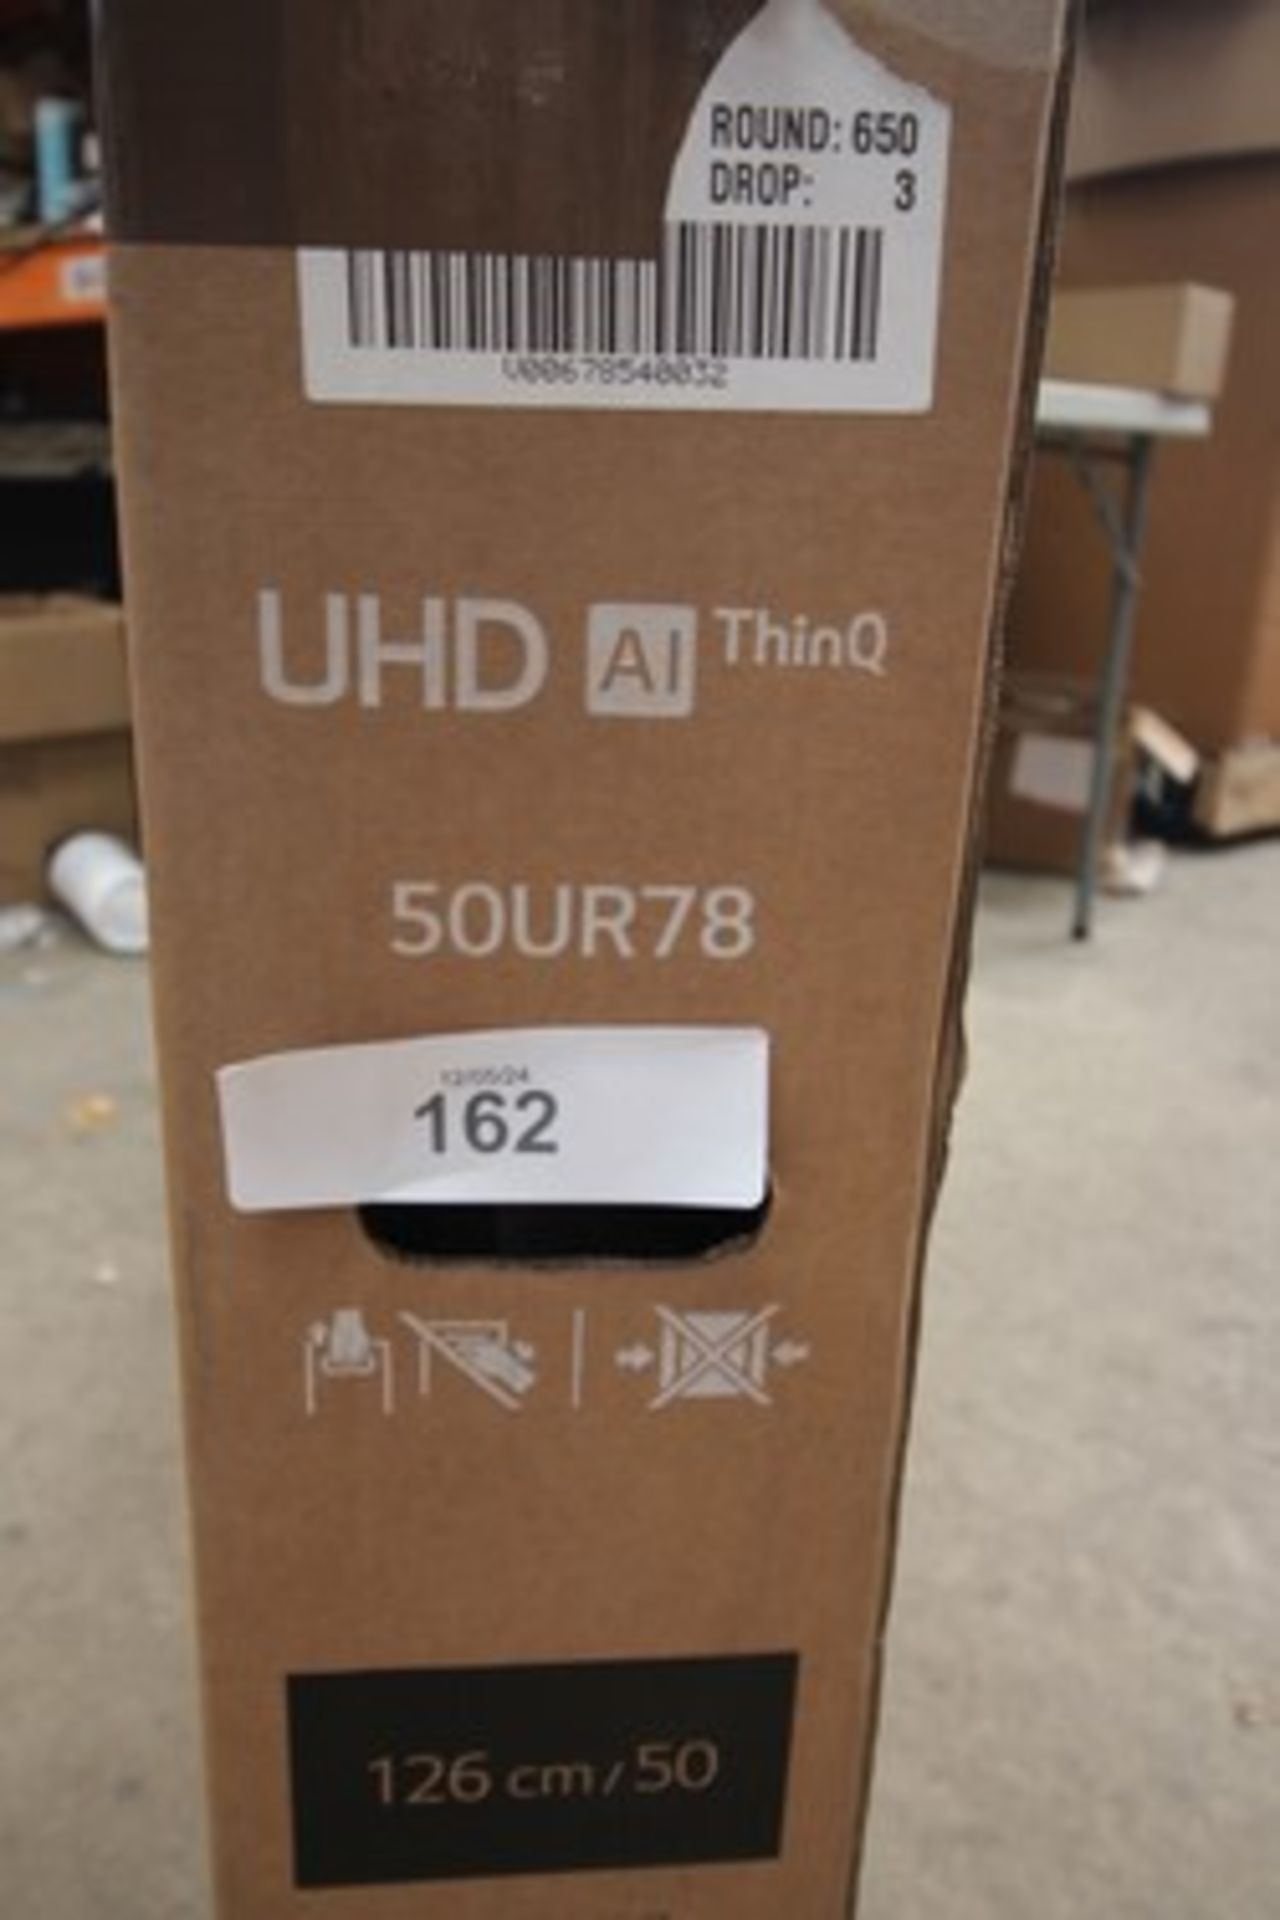 1 x LG UHD AI thin Q 50" TV, Model 50UR78 - New in tatty box (ES2) - Image 4 of 4